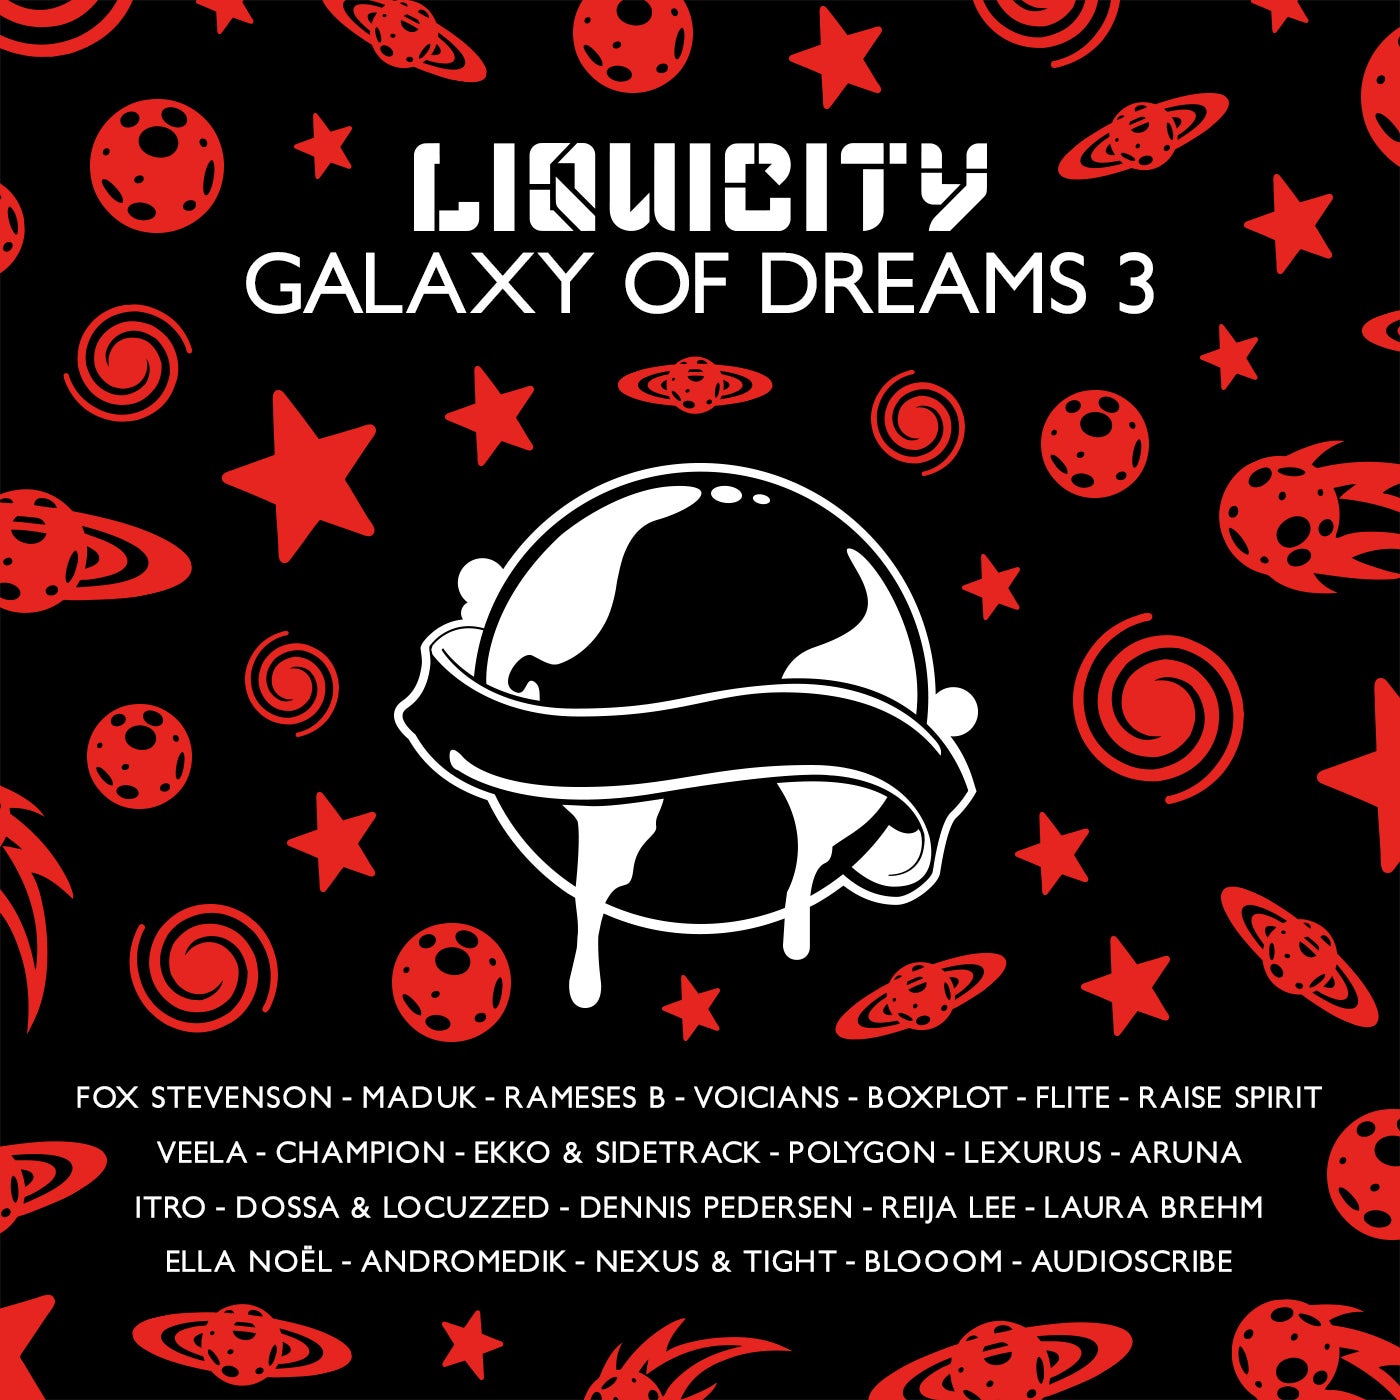 Galaxy Of Dreams 3 - Liquicity Presents